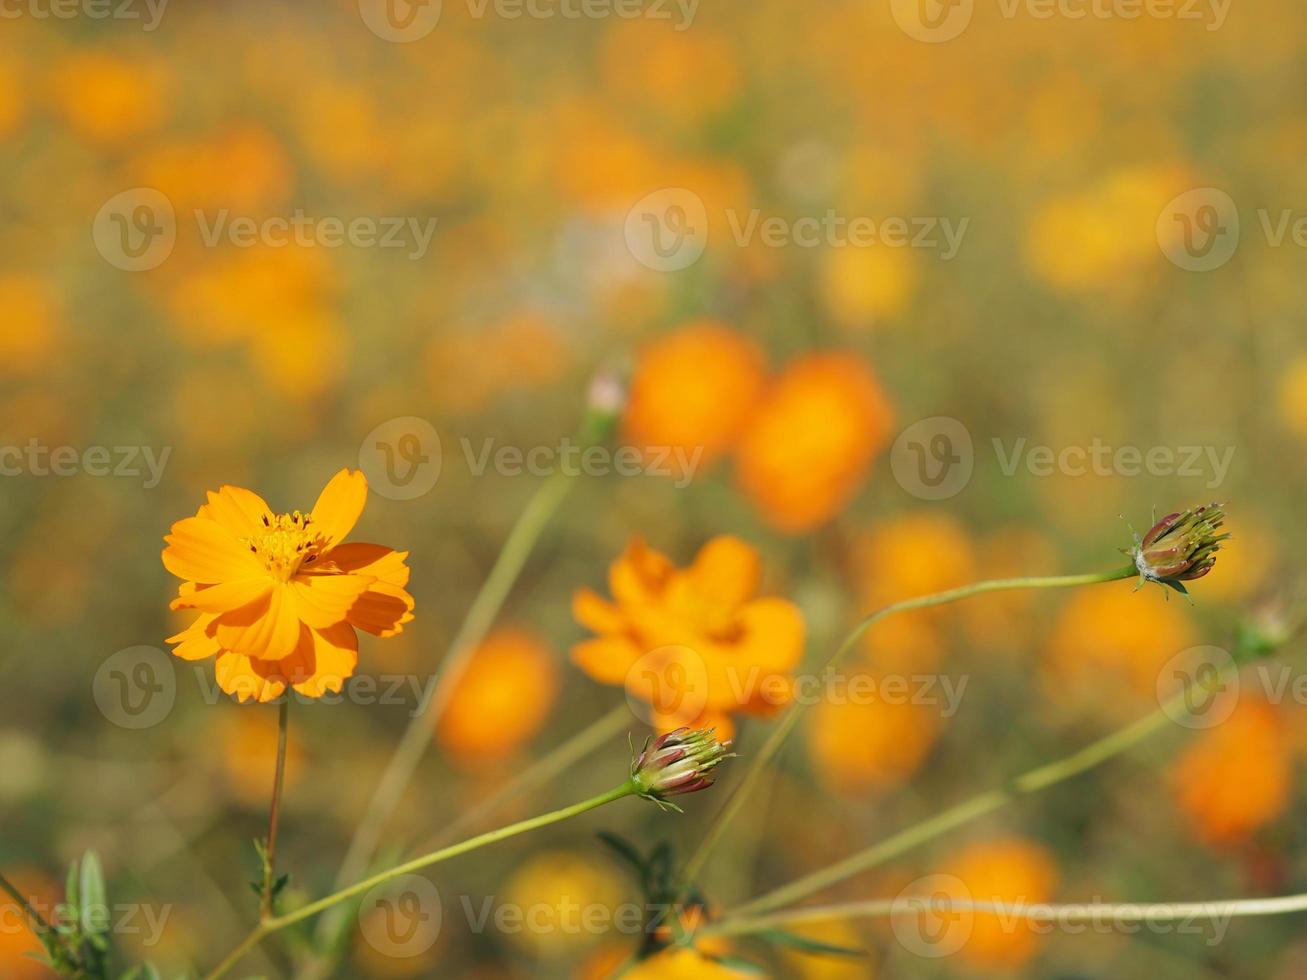 aster messicano, cosmo, compositae, cosmo sulfureo colore giallo e arancione fioritura primaverile in giardino su sfondo sfocato della natura foto